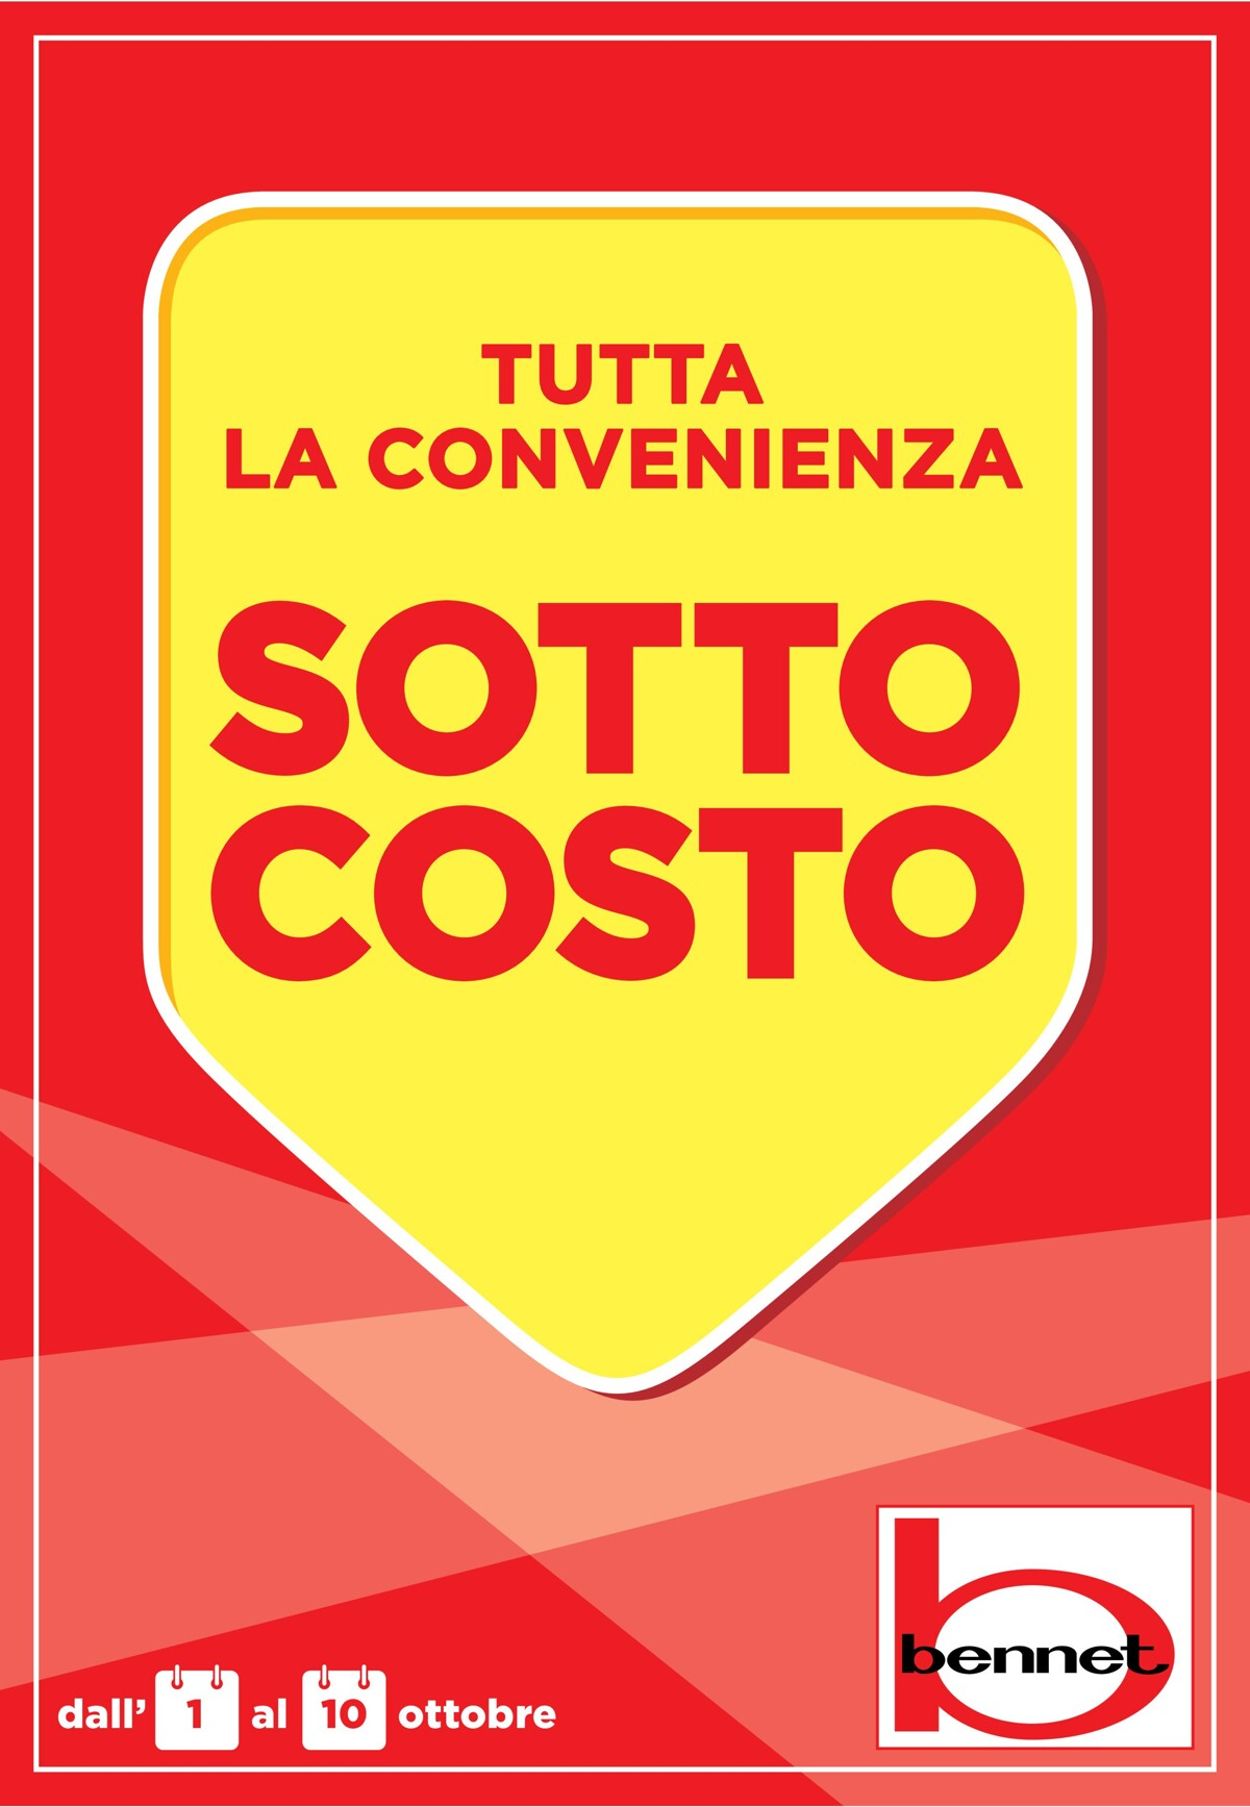 Volantino bennet - Offerte 01/10-10/10/2020